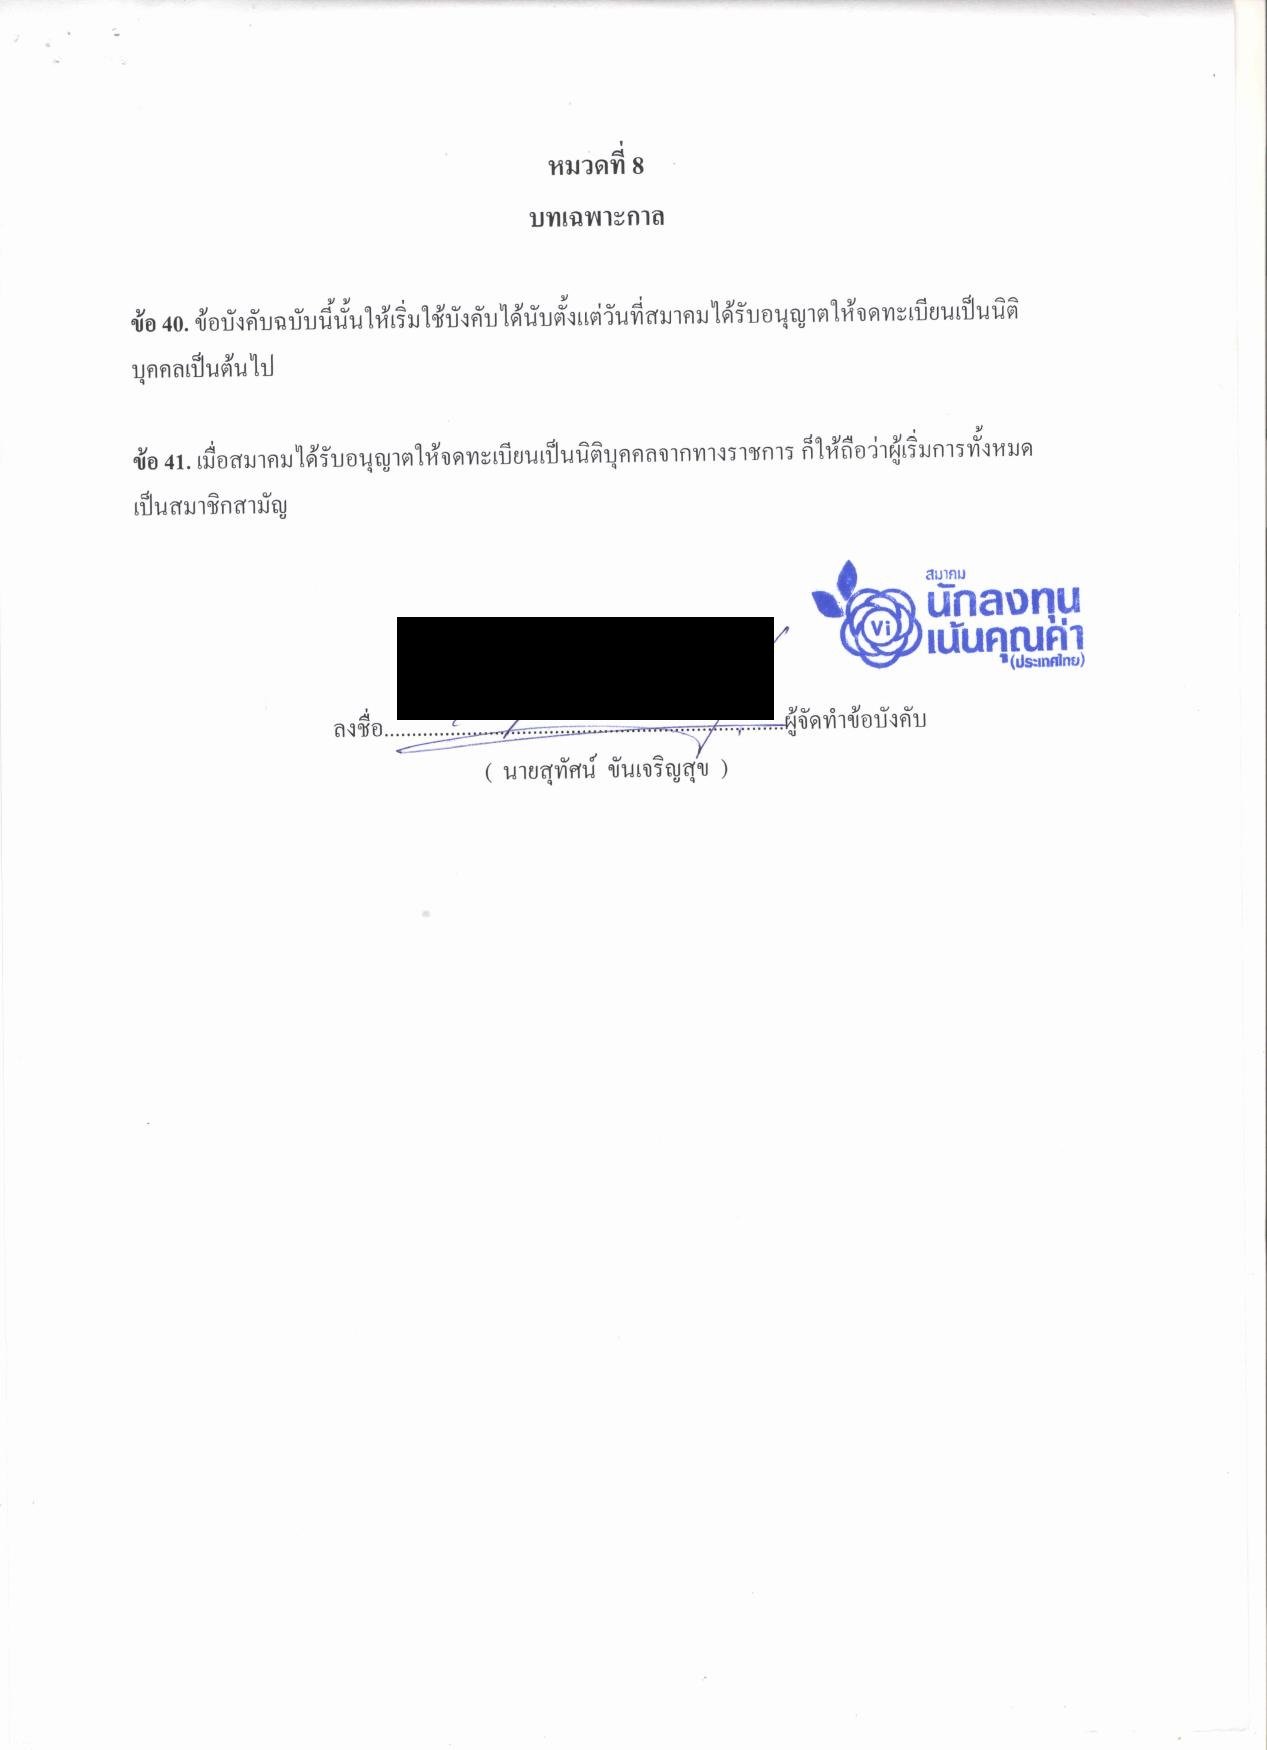 1.ข้อบังคับของสมาคมนักลงทุนเน้นคุณค่า (ประเทศไทย)_09 edit.jpg